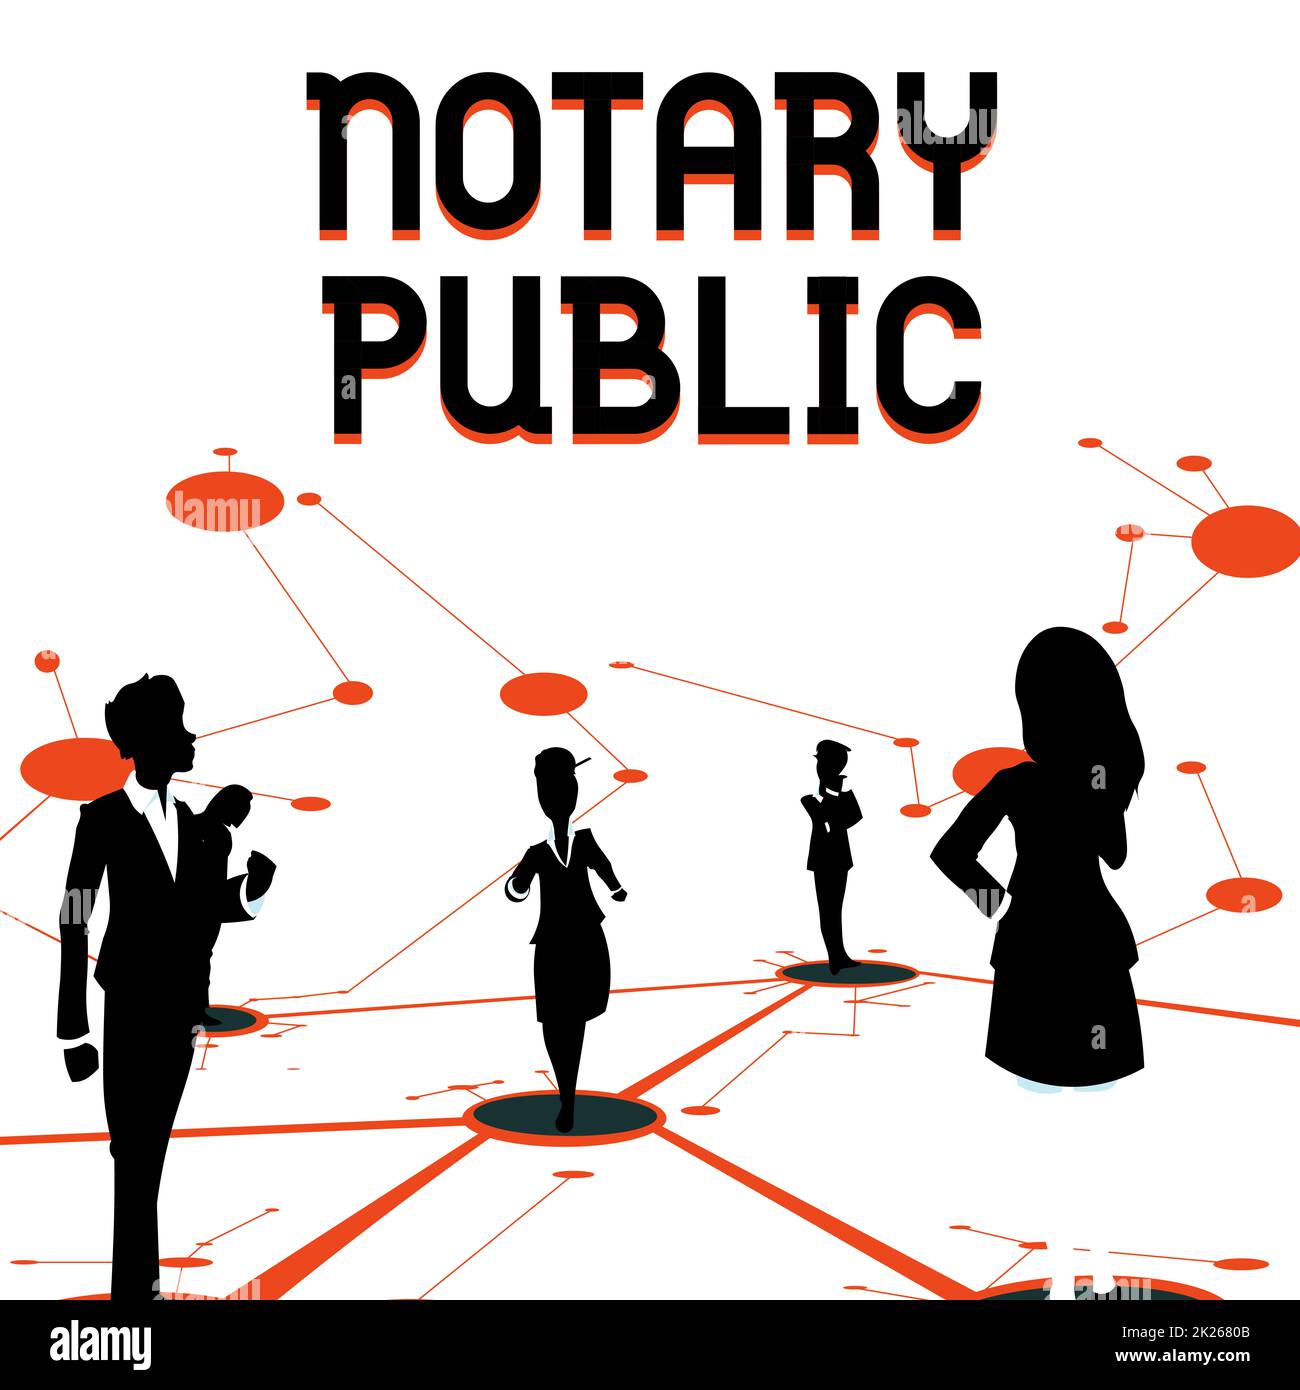 Textüberschrift für Notar Public. Konzept bedeutet Legalität Dokumentation Autorisierung Zertifizierungsvertrag mehrere Teammitglieder stehen auf dem Boden mit getrenntem Denken und Verbundenheit. Stockfoto